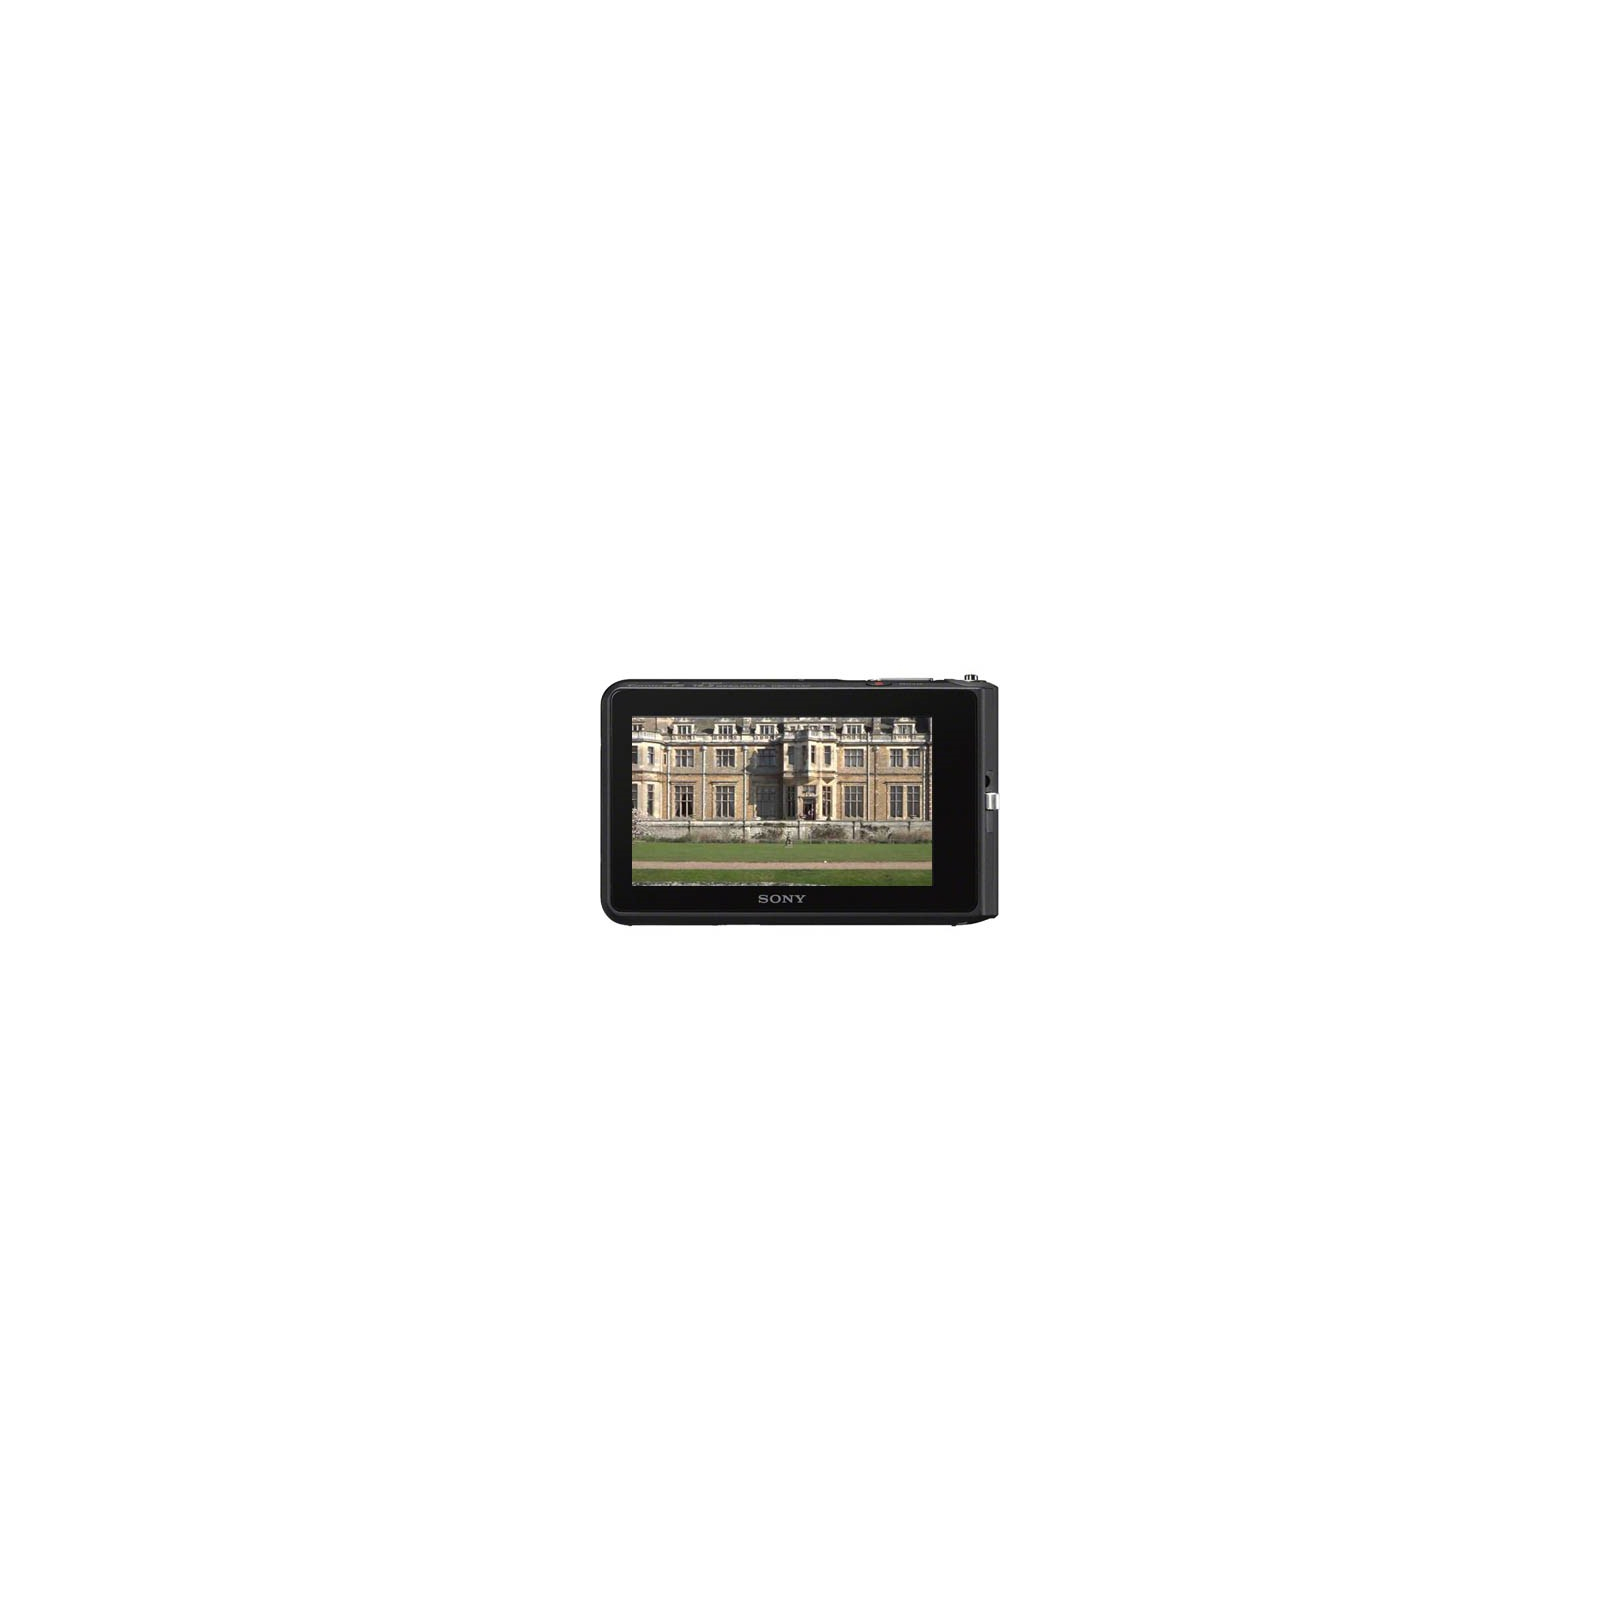 Цифровий фотоапарат Sony Cyber-shot DSC-TX30 black (DSCTX30B.RU3) зображення 2